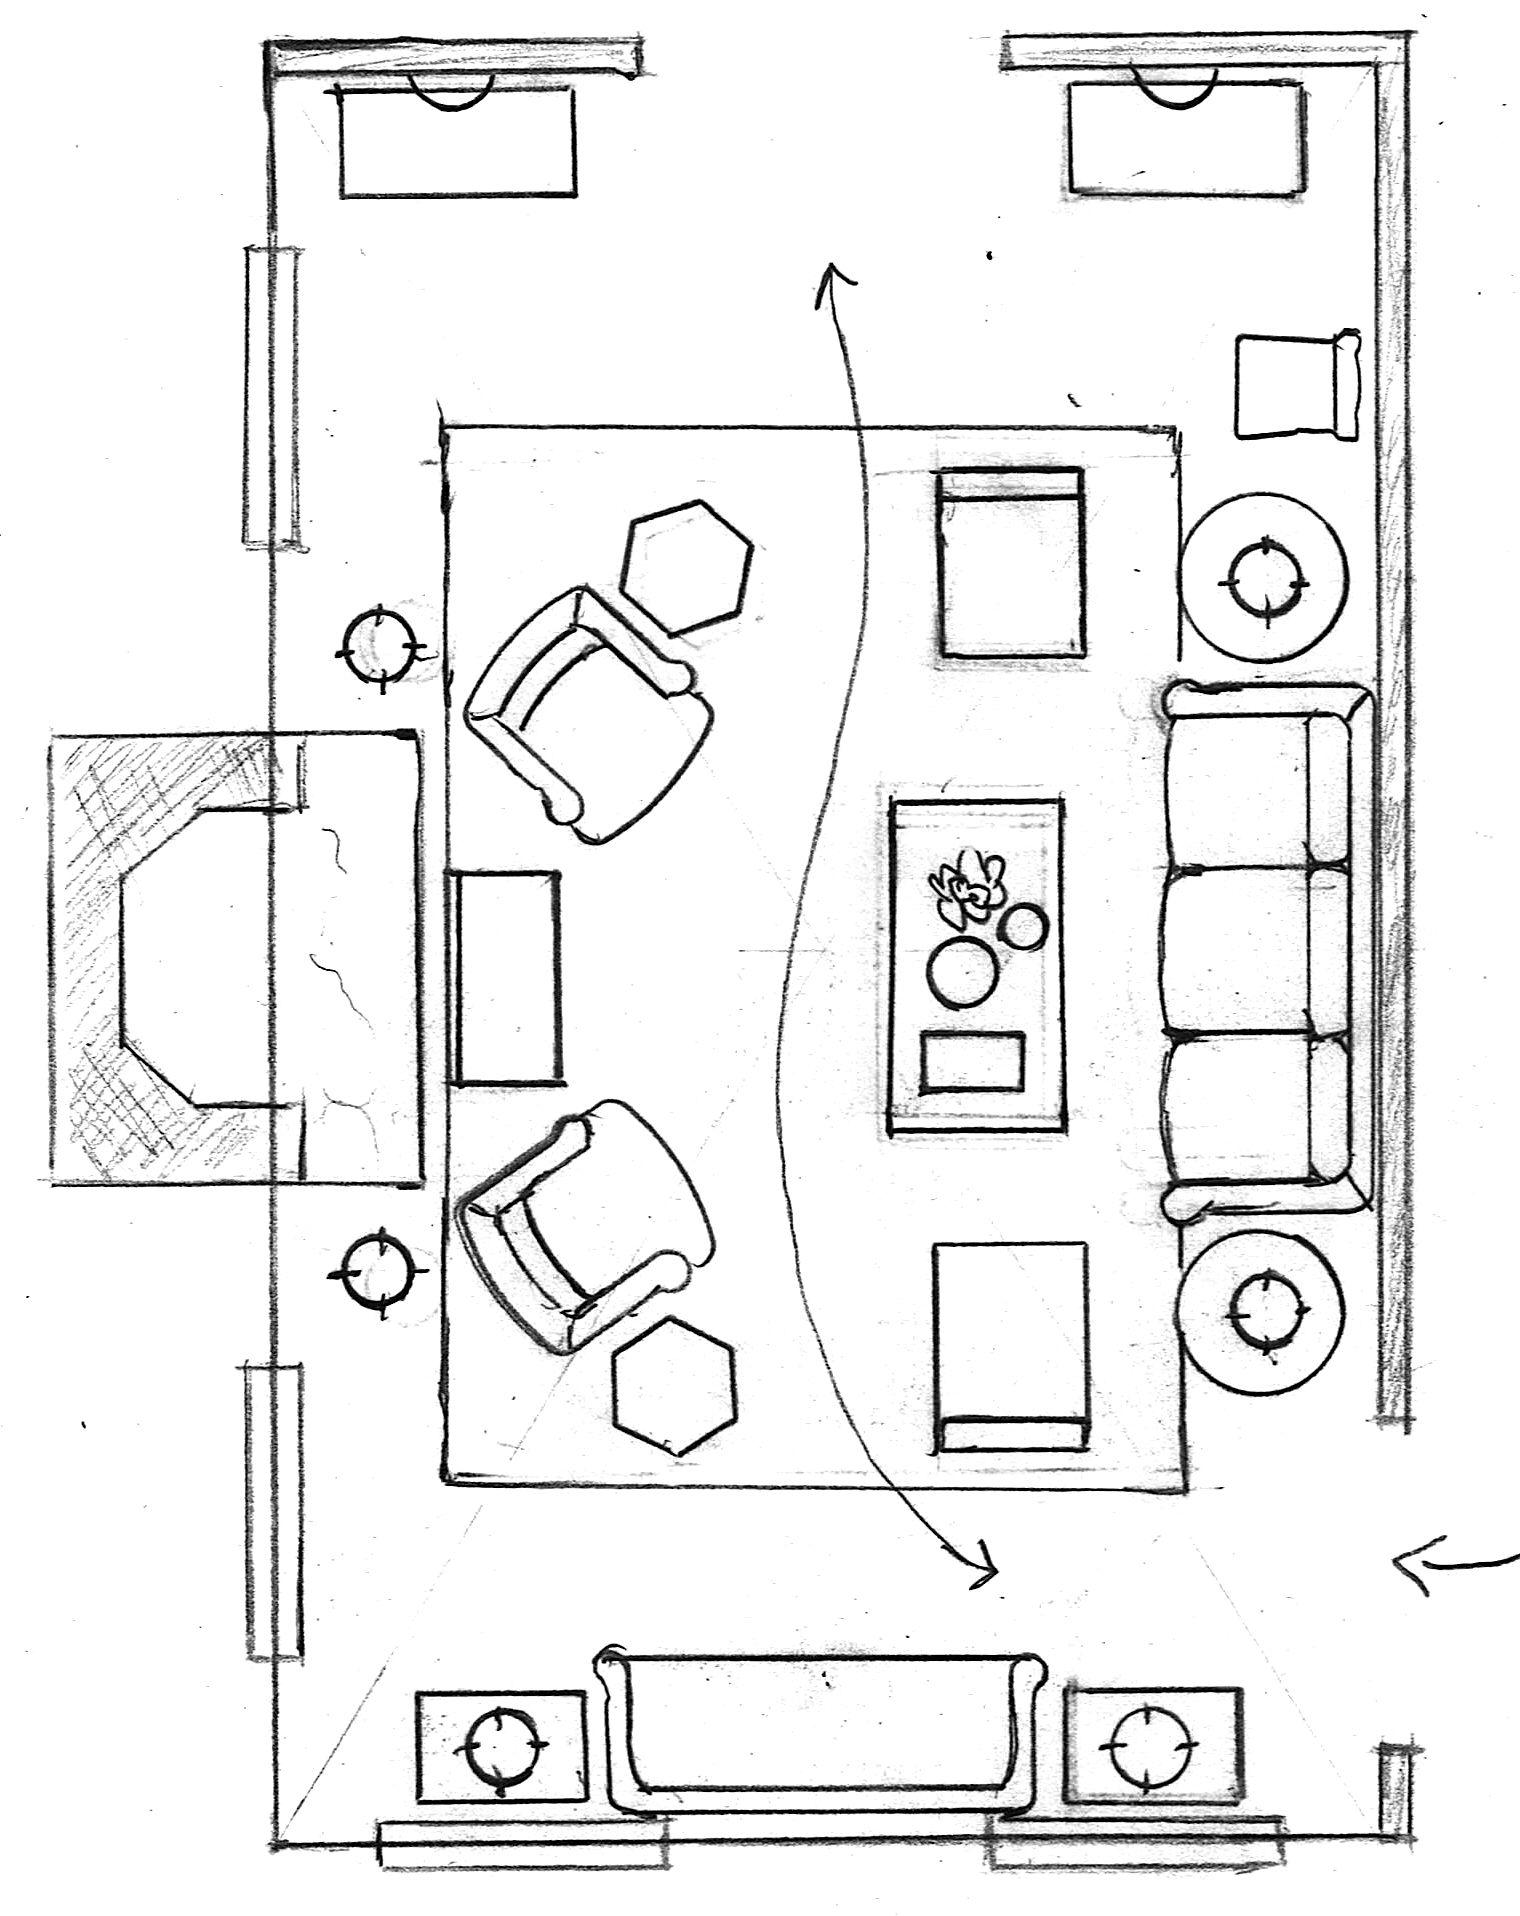 floor plan furnished   living room layout   Laurel Home